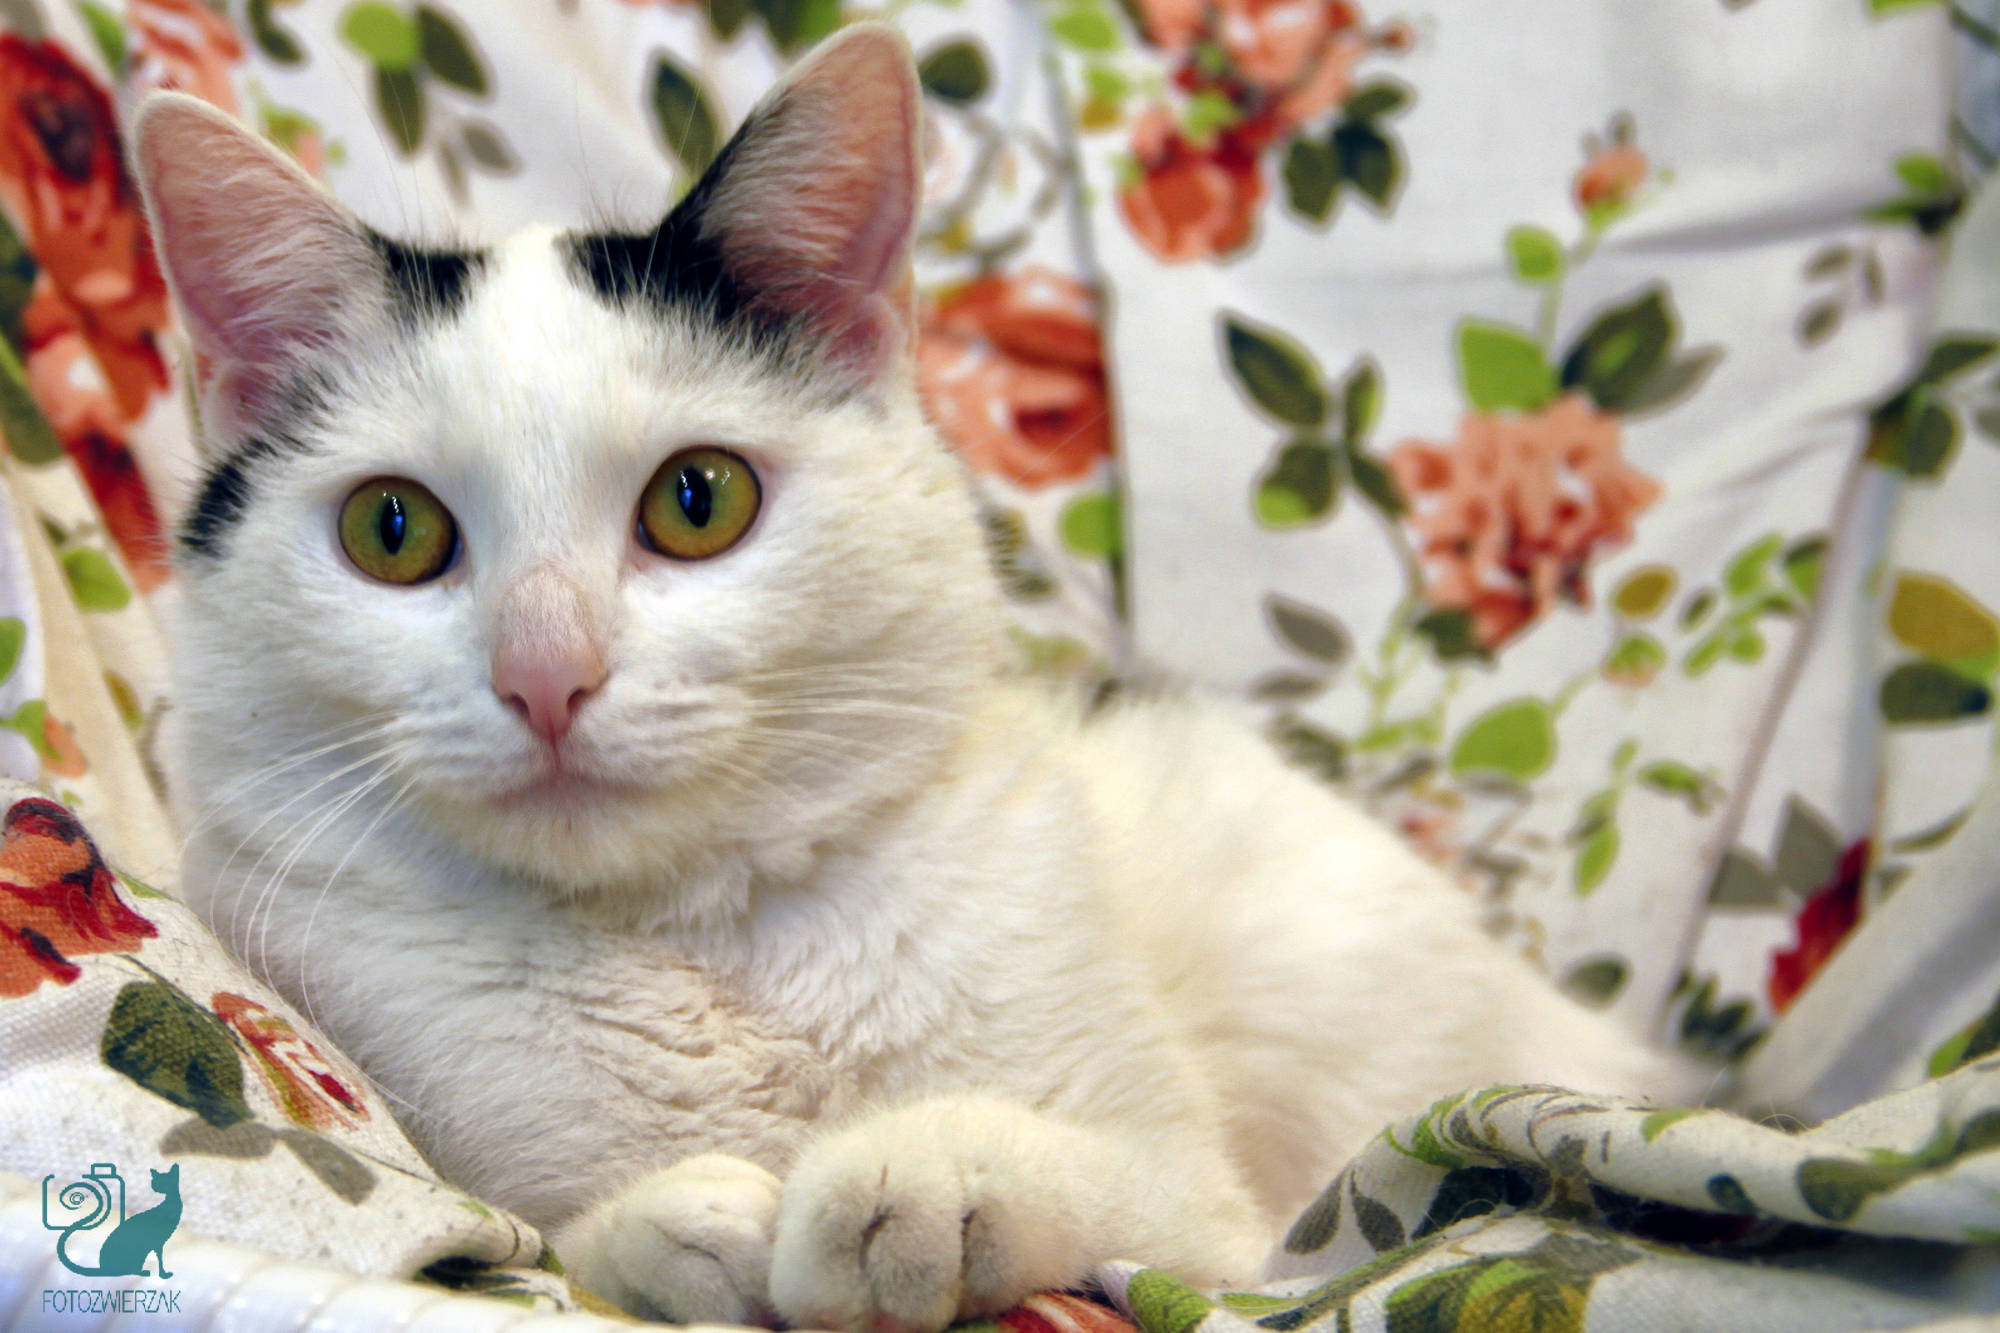 kocia modelka, kotek, biały kot, zabawa z kotem, pozujący kot, kociak, kotka, cat, kocia fotografia, kocia sesja